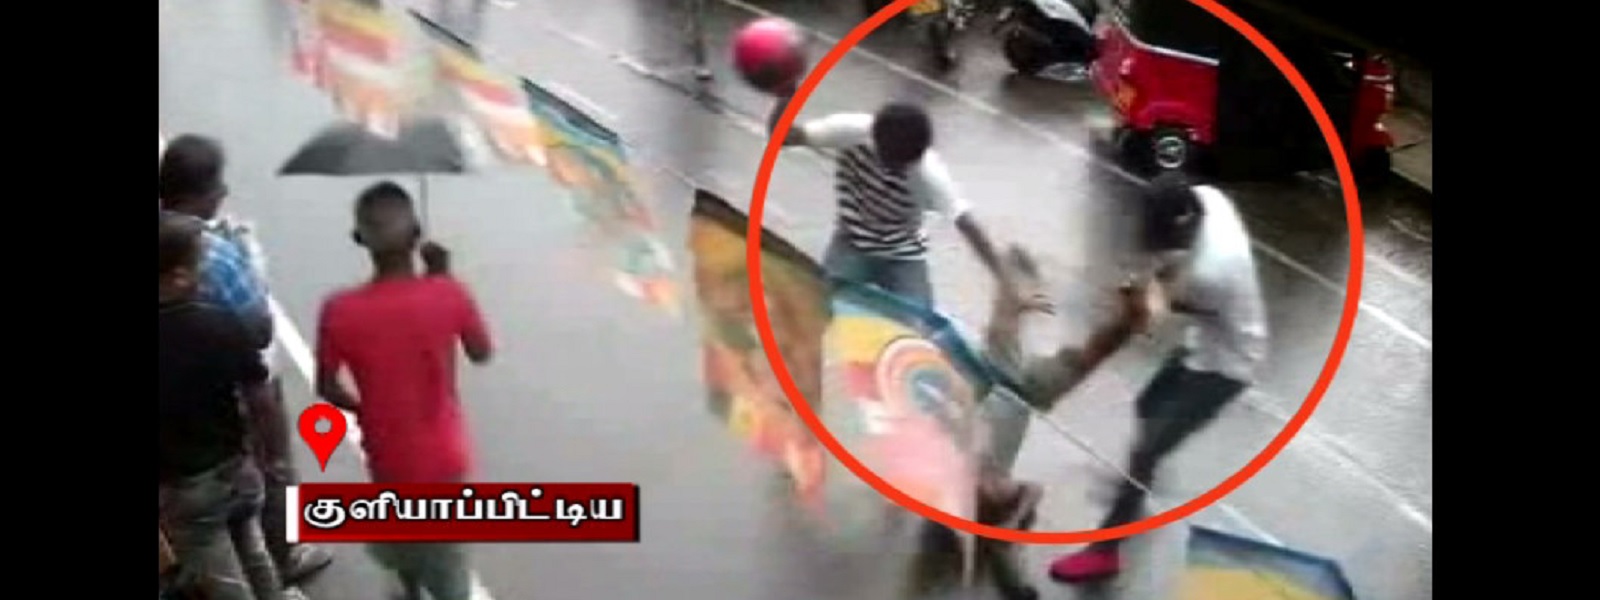 பாடசாலை மாணவர் மீது தாக்குதல் (CCTV)